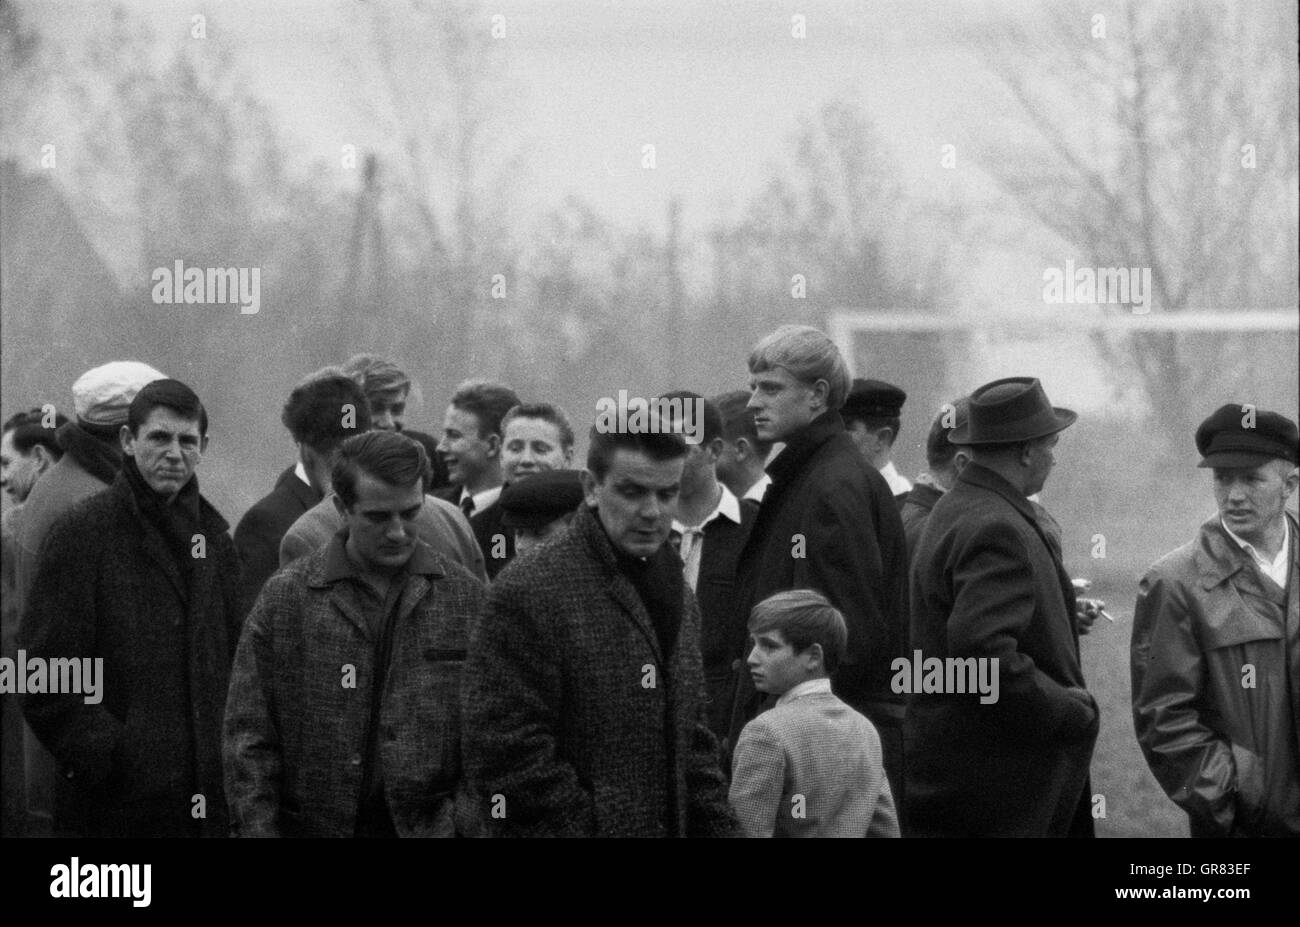 La gente Watcher 1965 BW Foto de stock